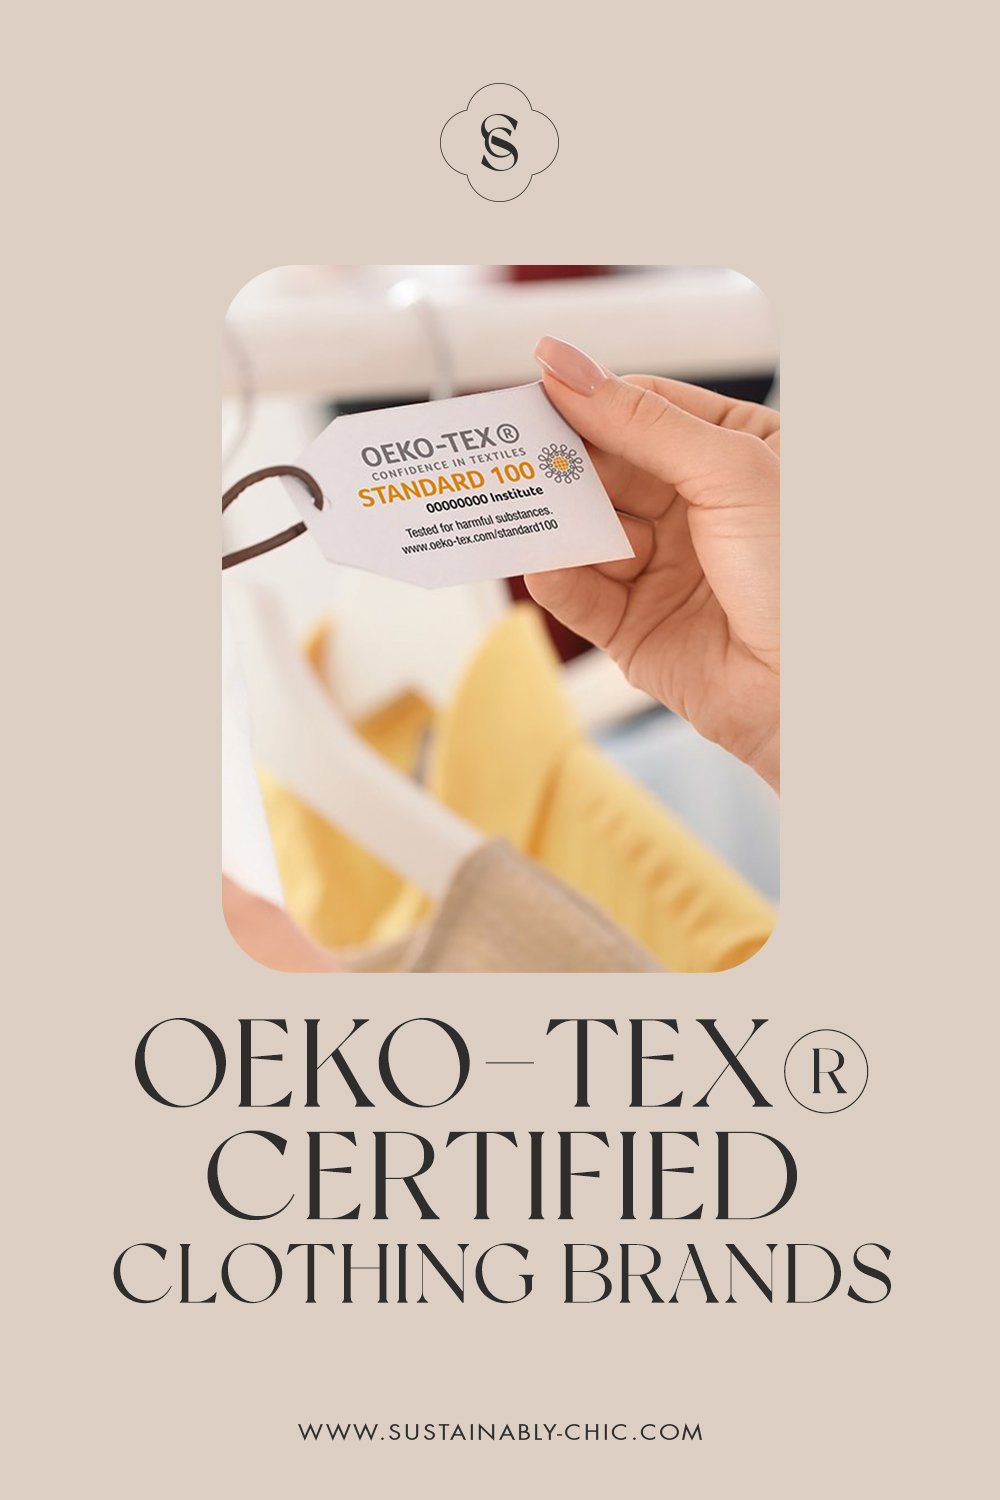 14 Sustainable Brands Selling OEKO-TEX® Certified Clothing